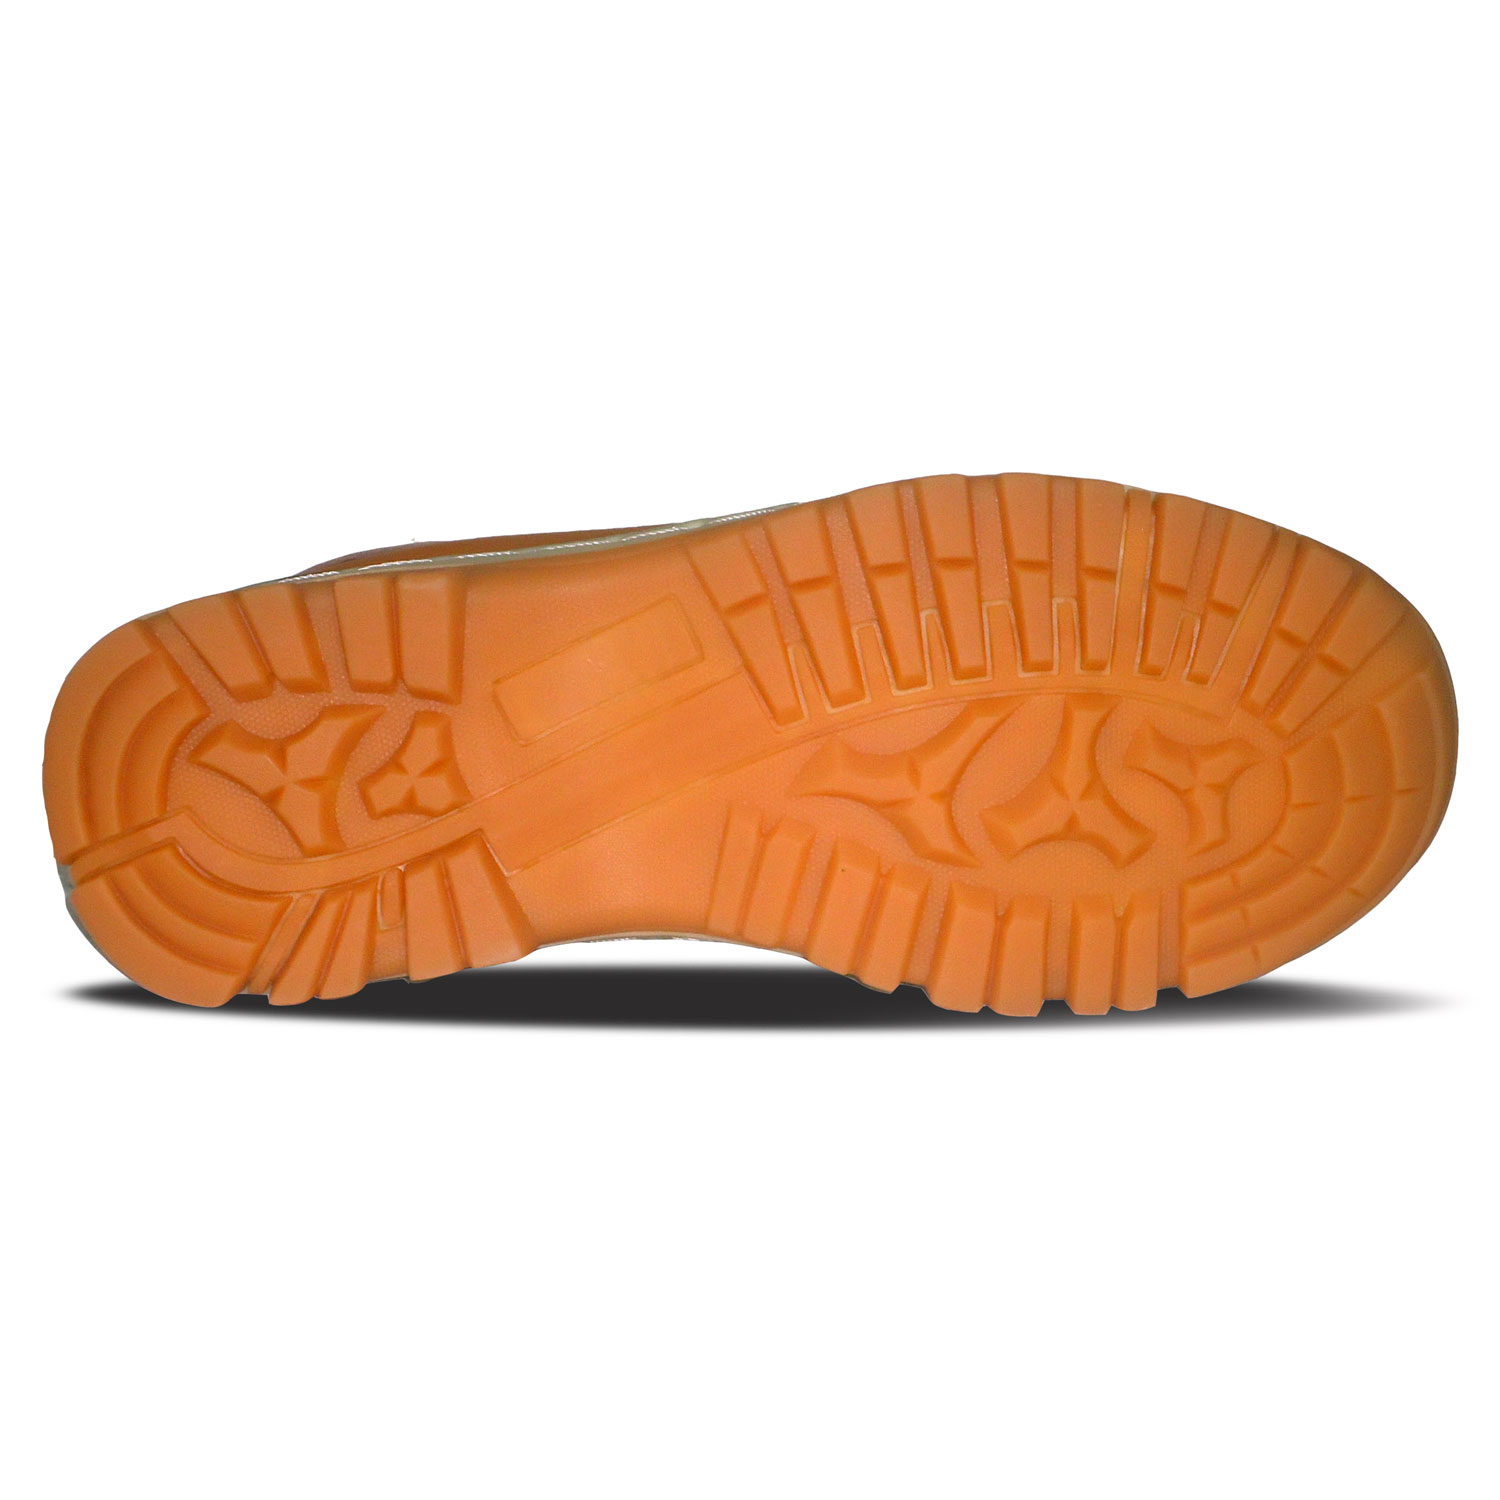 sepatu kulit pria loafer casual C15 tan black - bawah - atmal